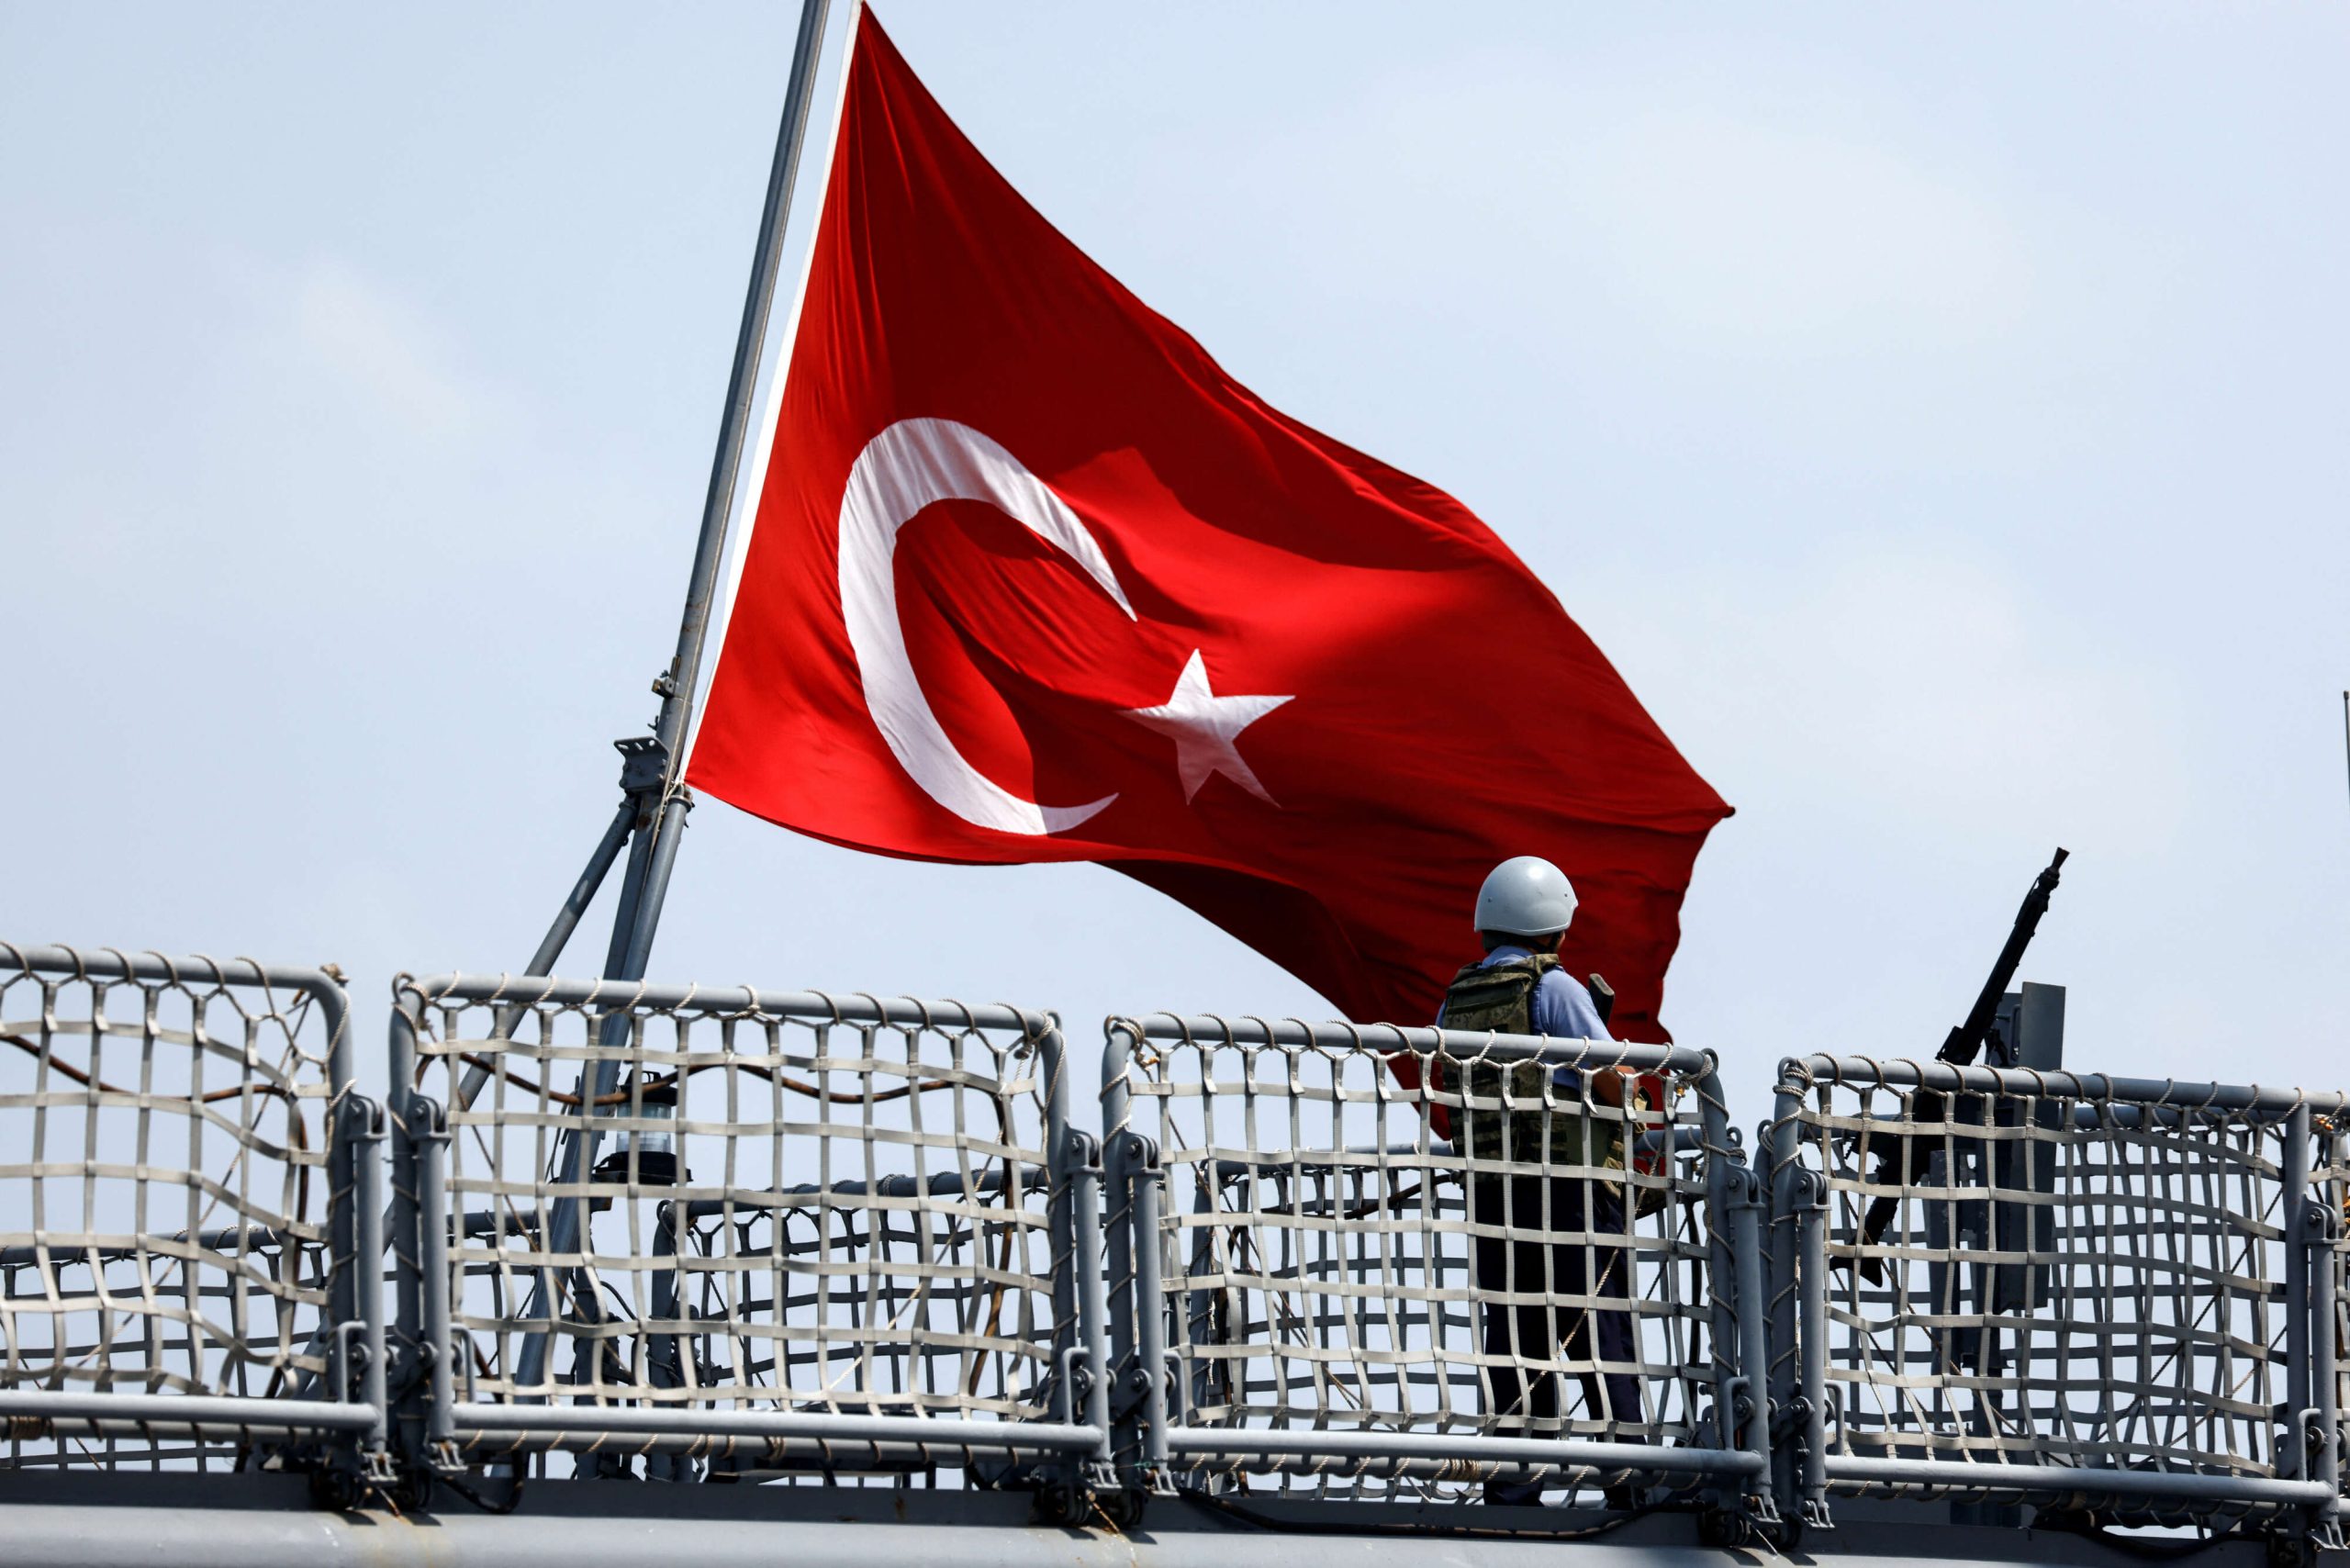 تركيا سترسل مزيداً من قواتها إلى قبرص رداً على “التسليح الأمريكي”